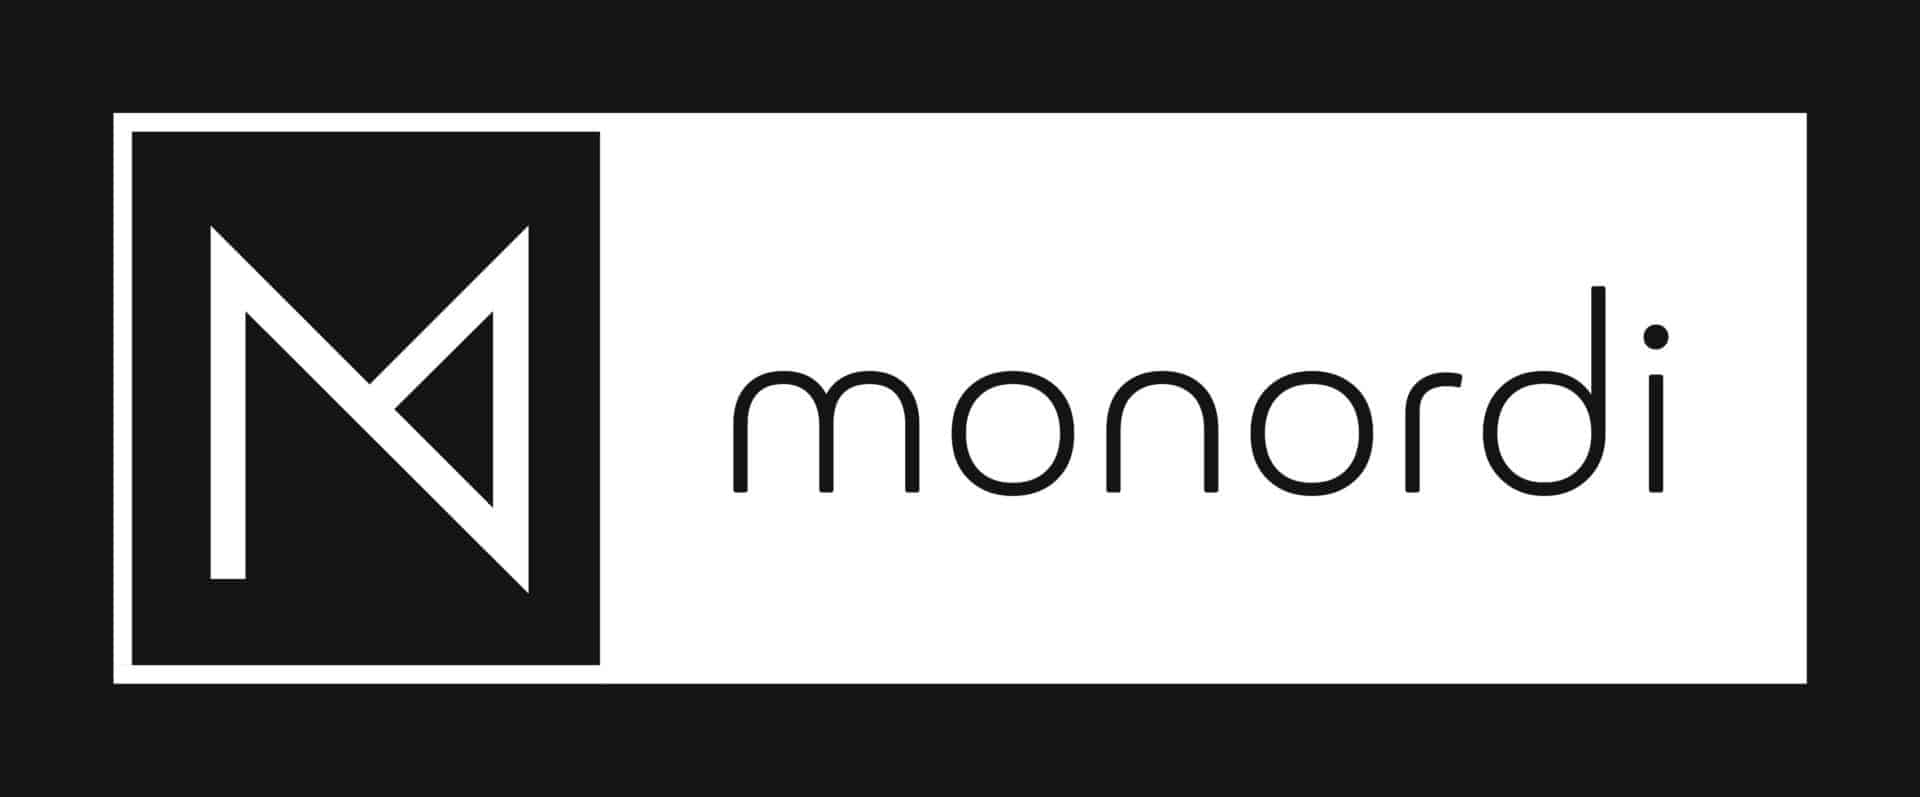 monordi-white_logo_color_background